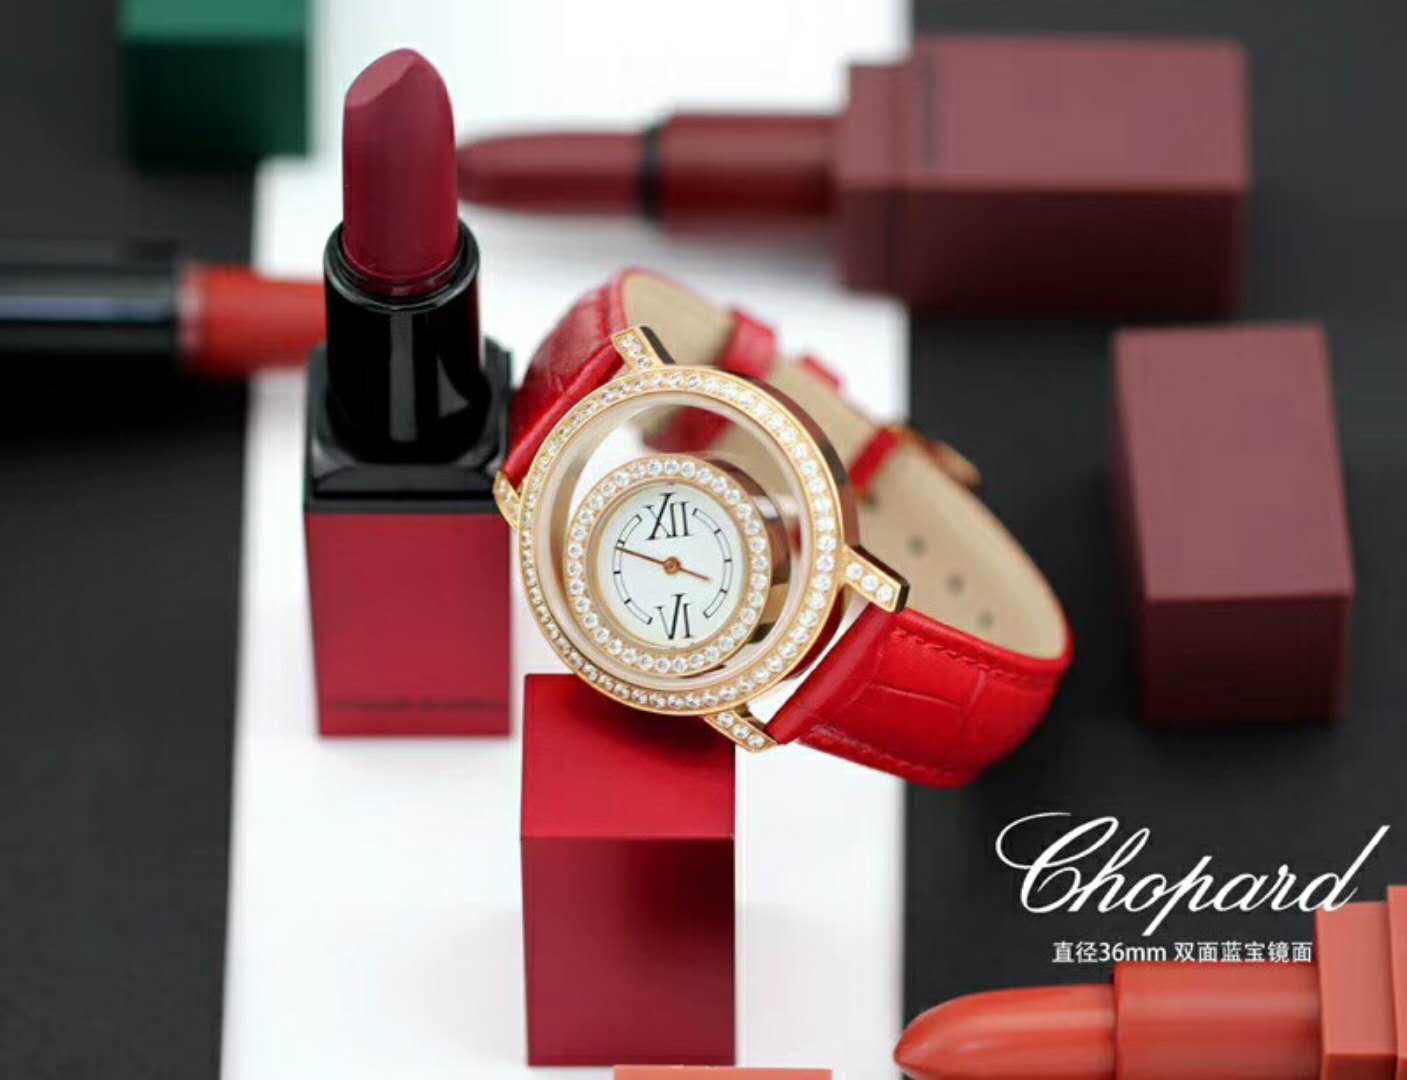 蕭邦 Chopard 透空 秉持著獨立、卓越品質、創意、傳承、尊重和勇氣的制錶理念，在腕錶界不斷開拓進取！